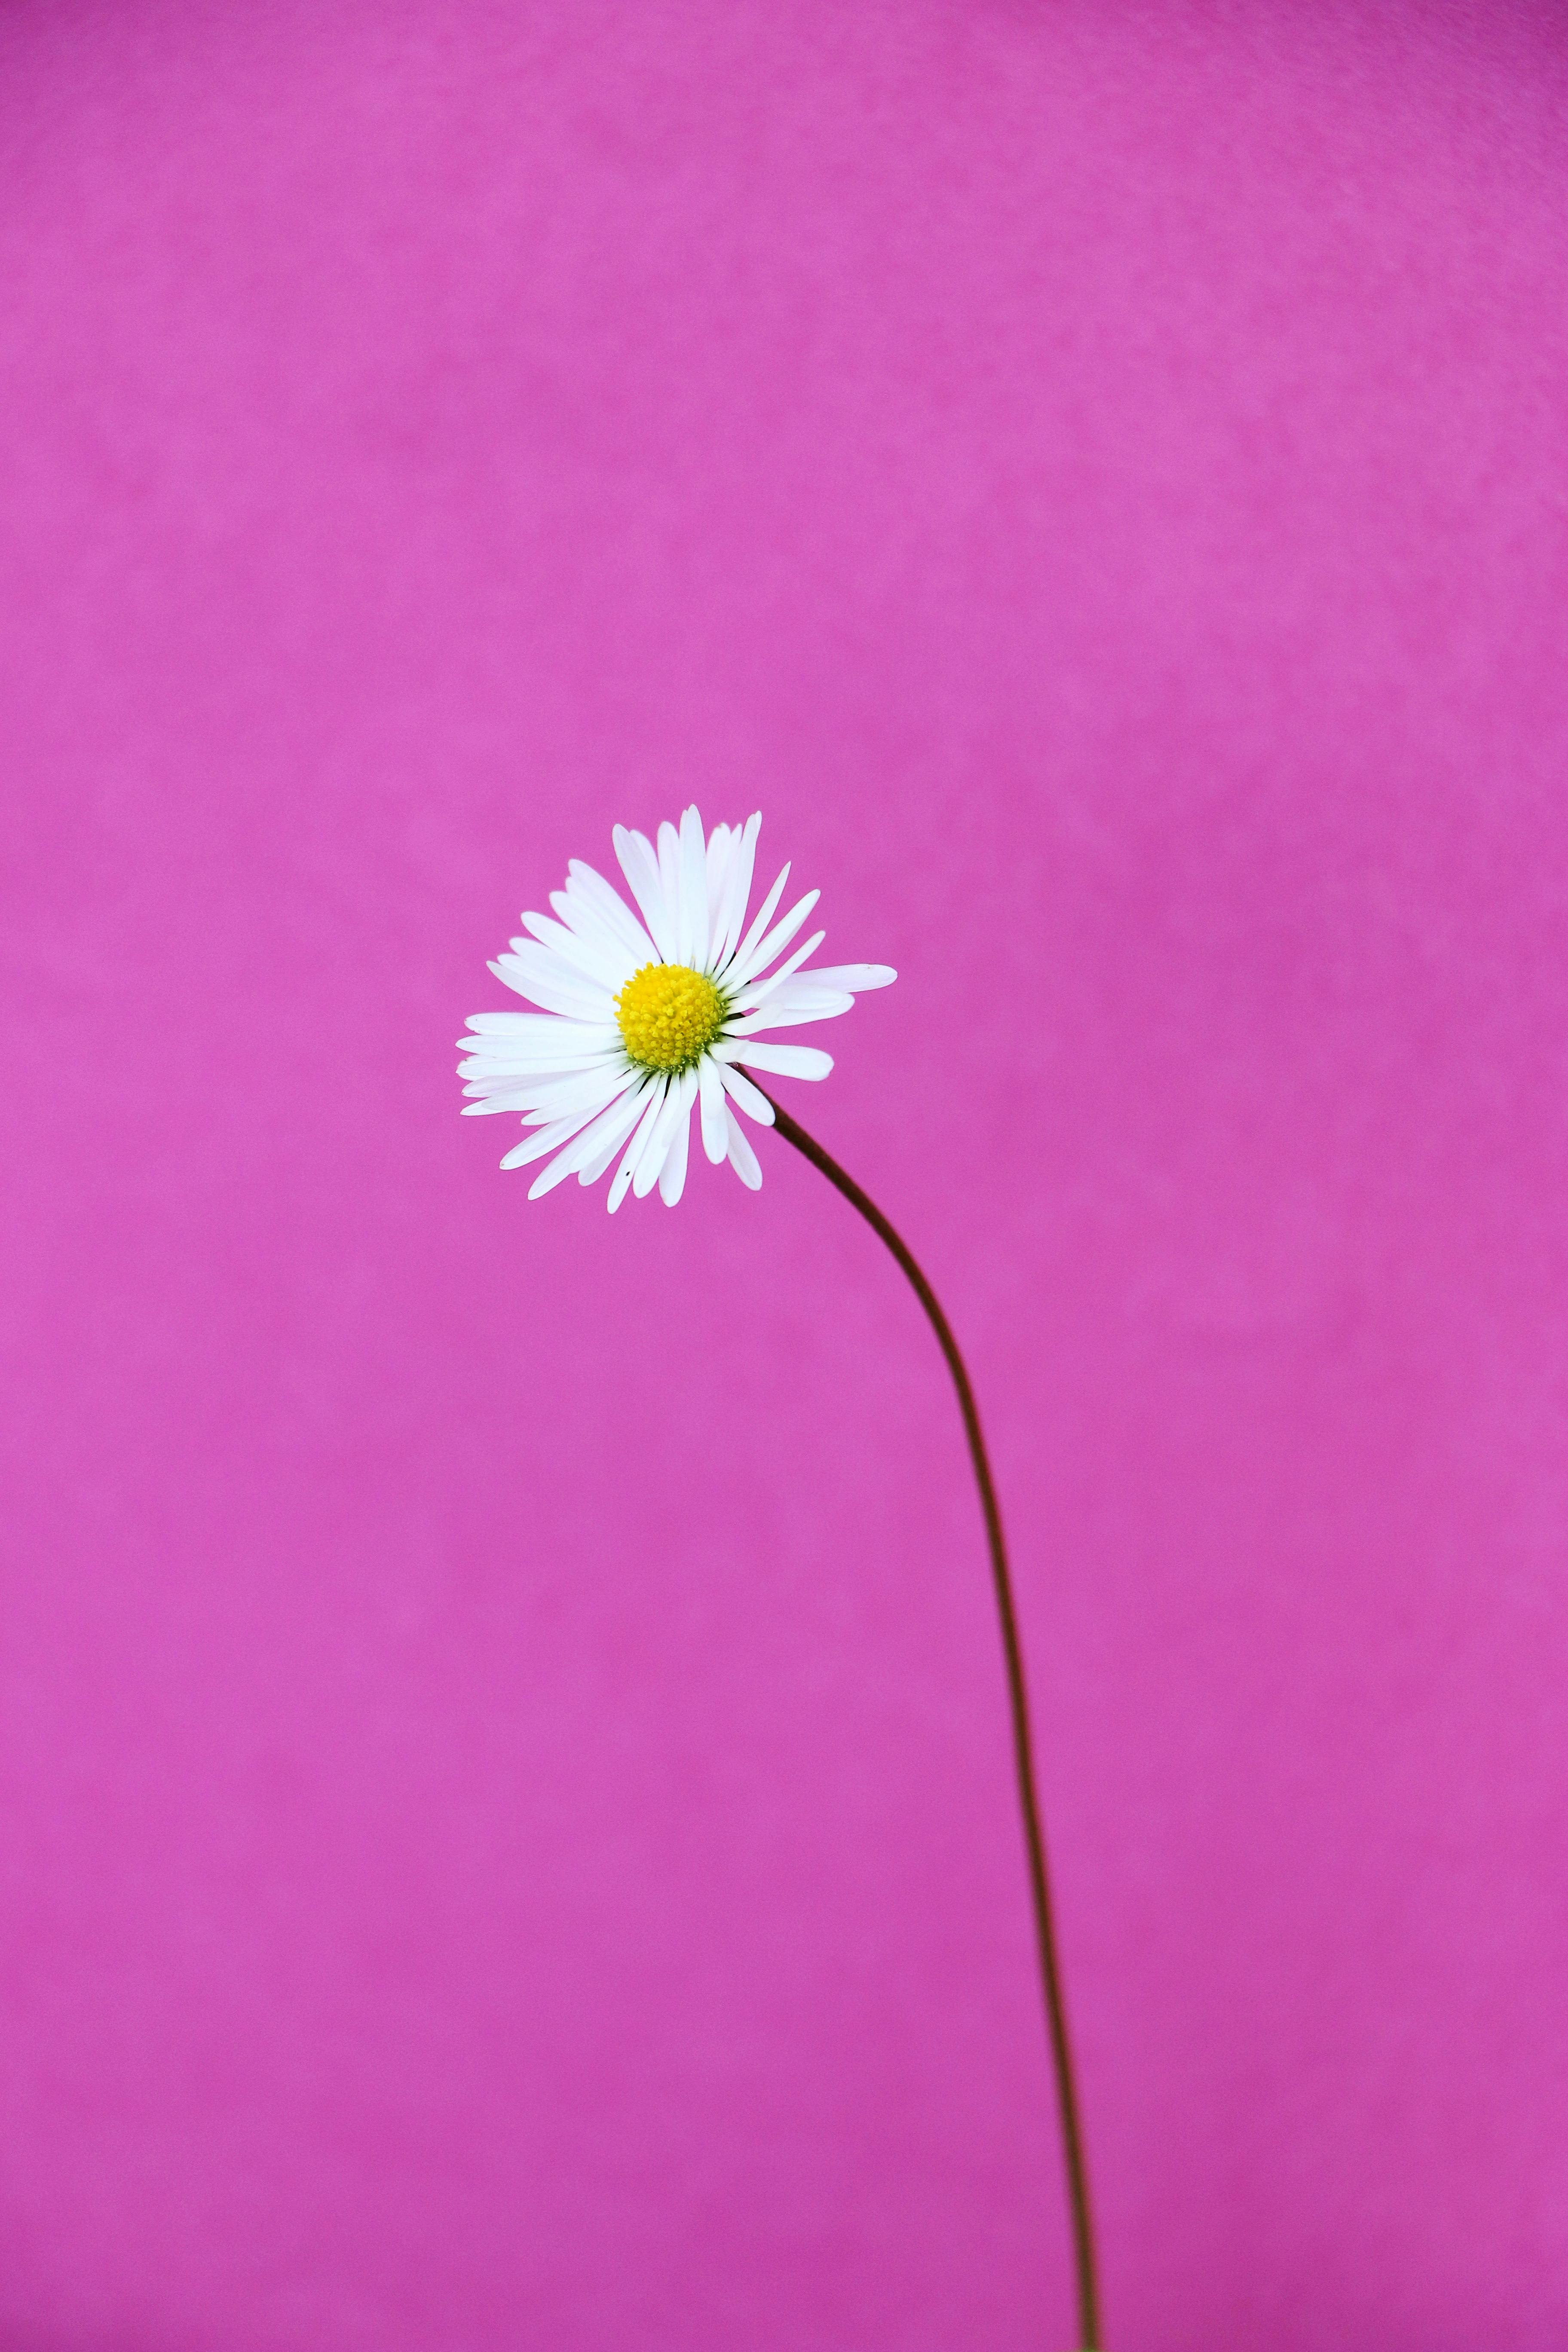 Gerbera Daisy Wallpaper 4K, Pink Daisy, Daisy flower